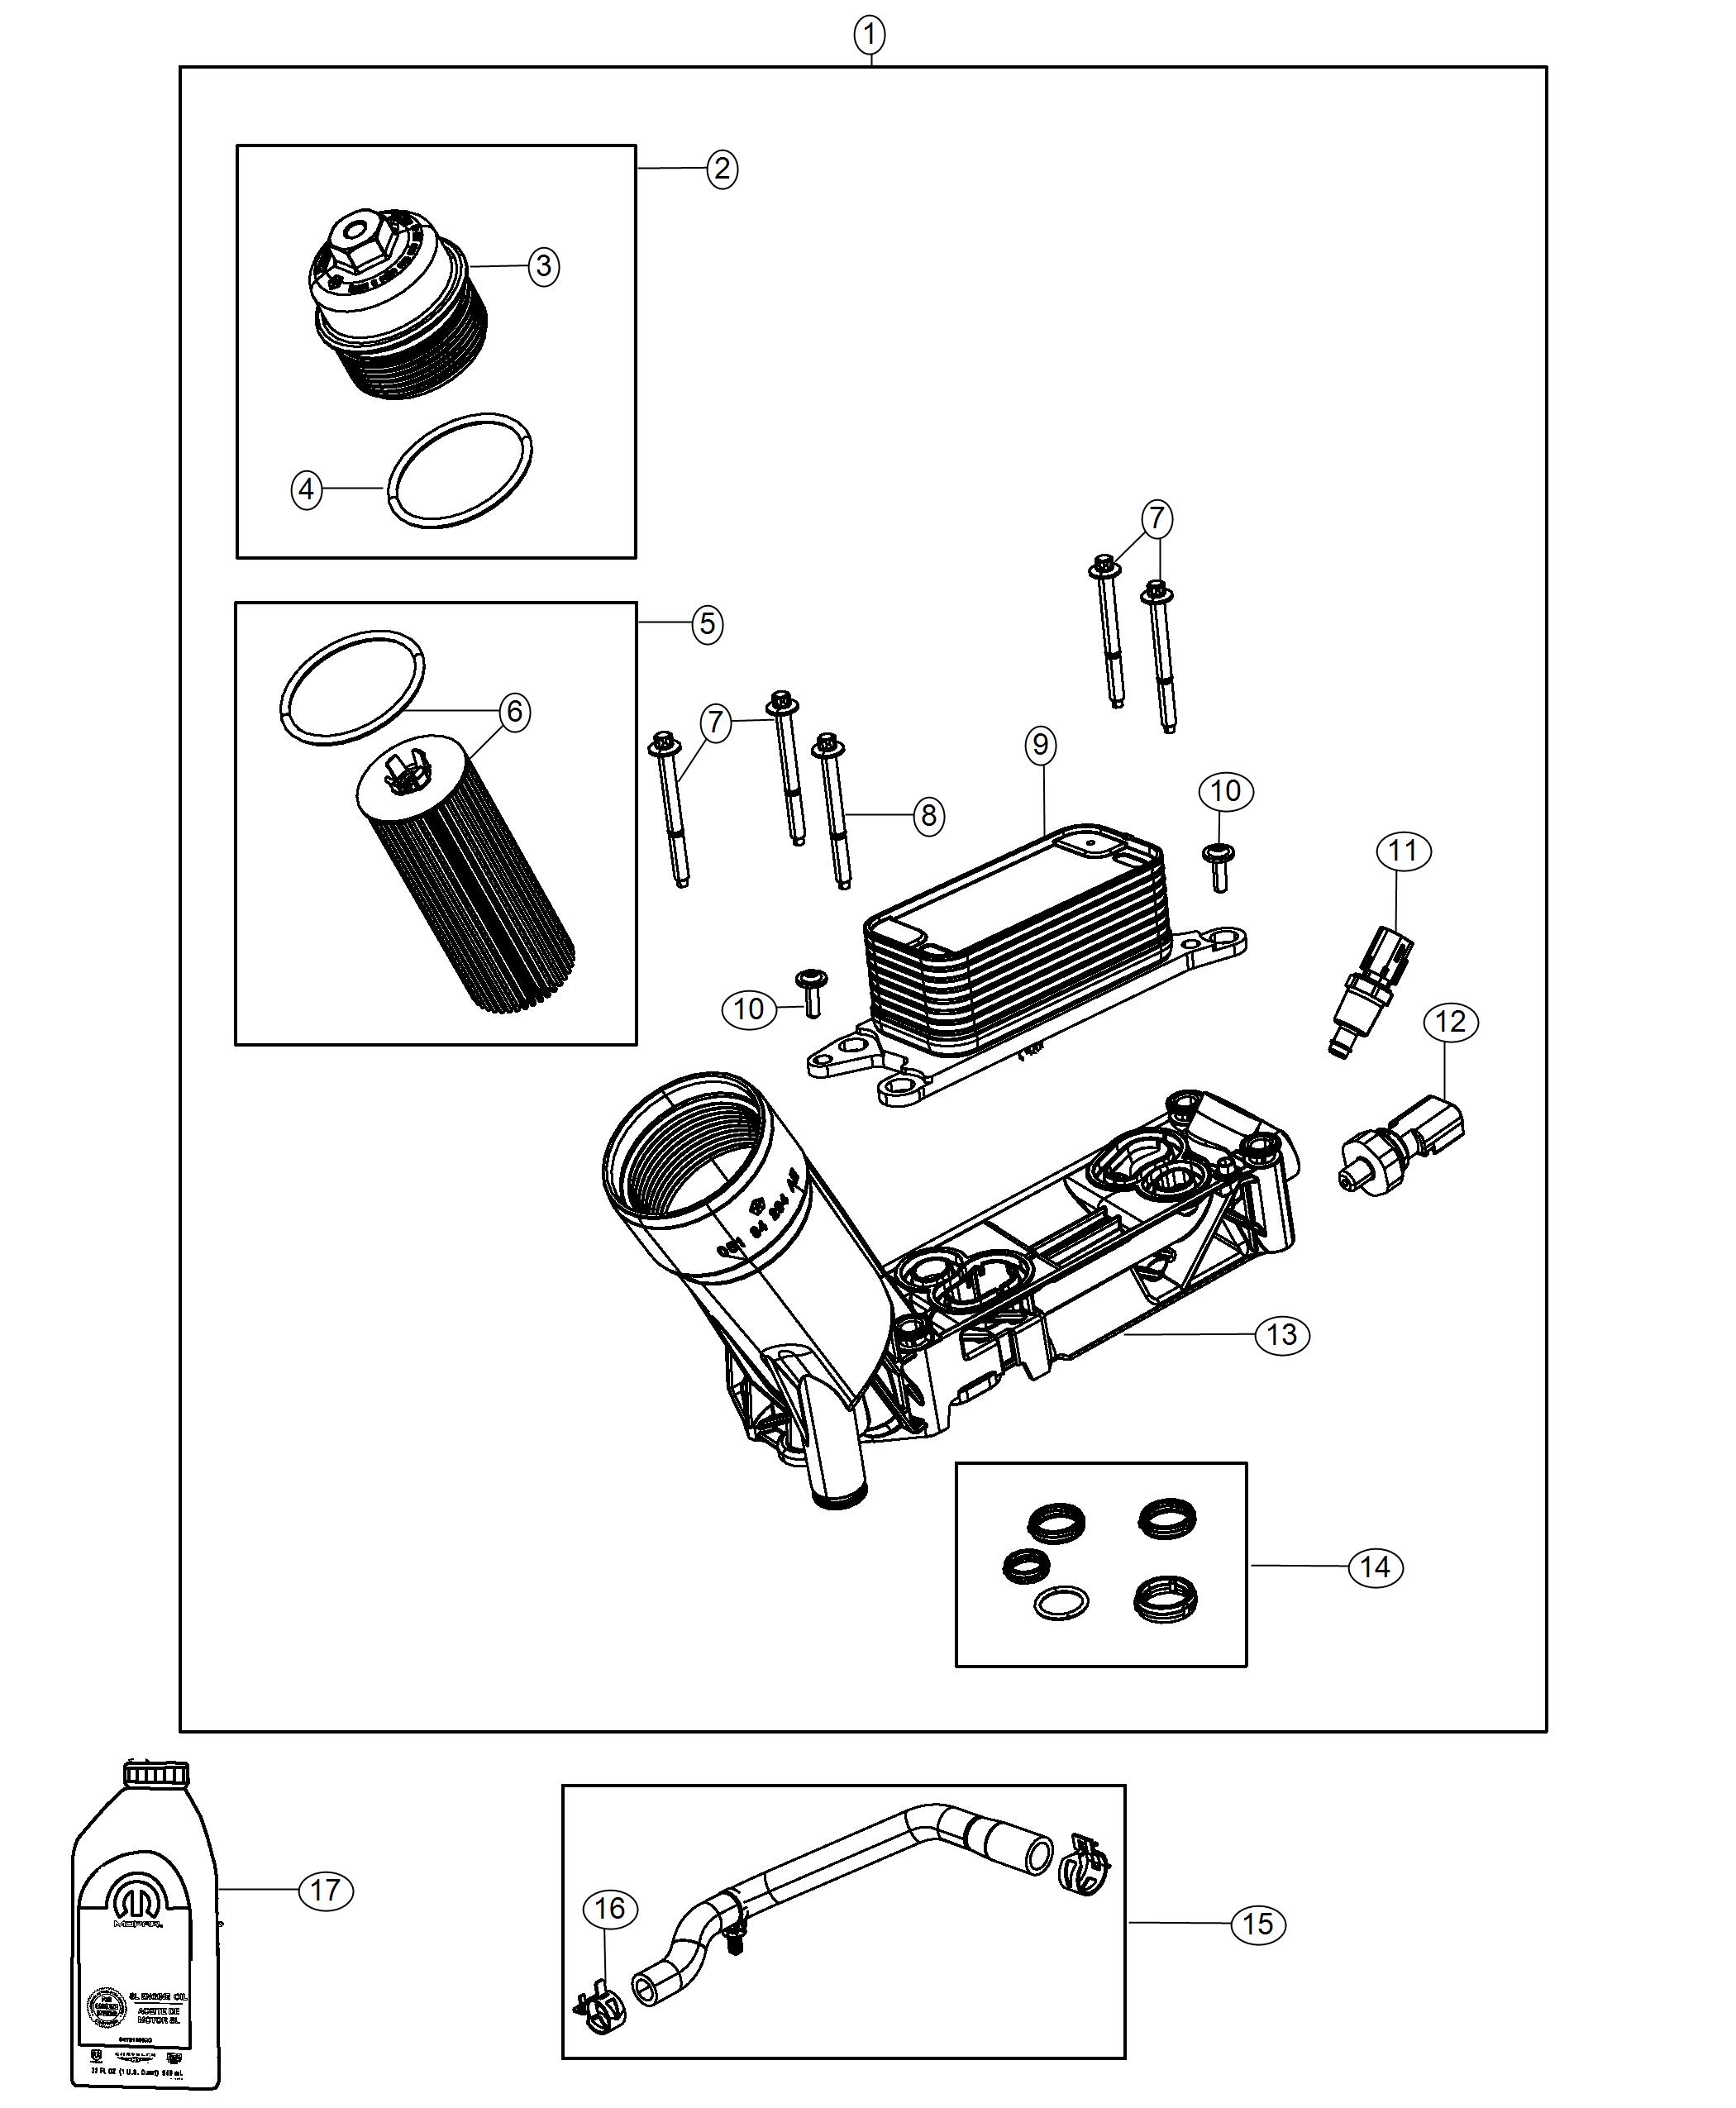 Engine Oil, Filter, Adapter/Cooler 3.6L. Diagram